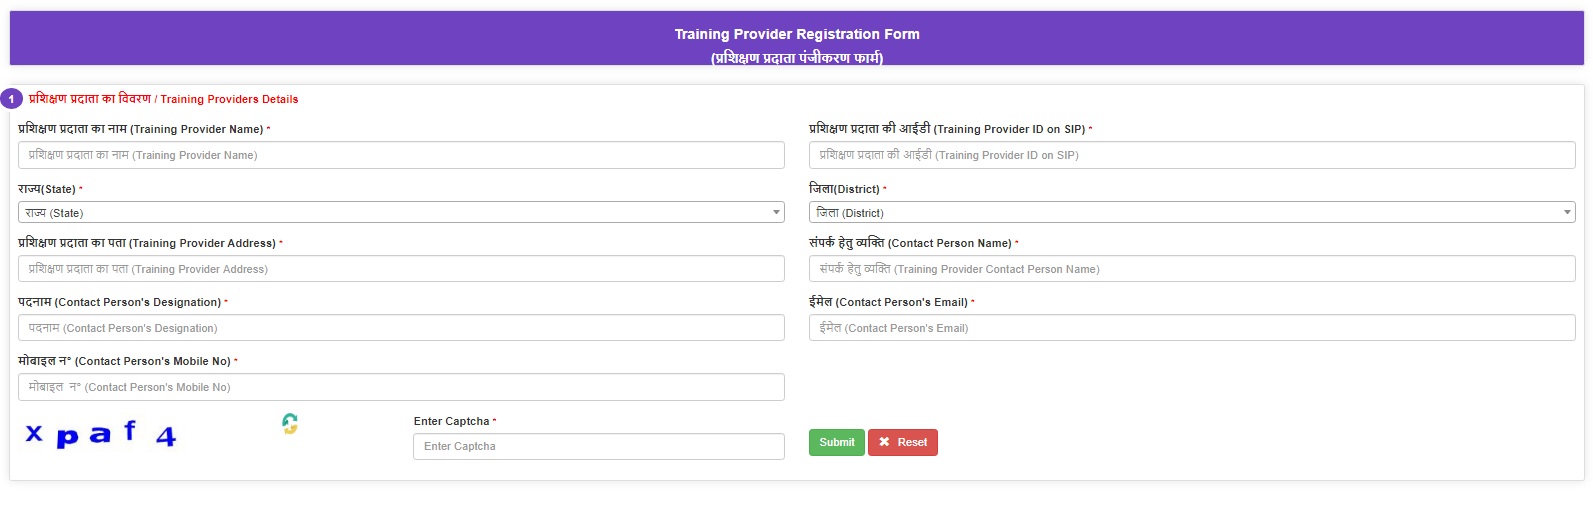 training provider registration form